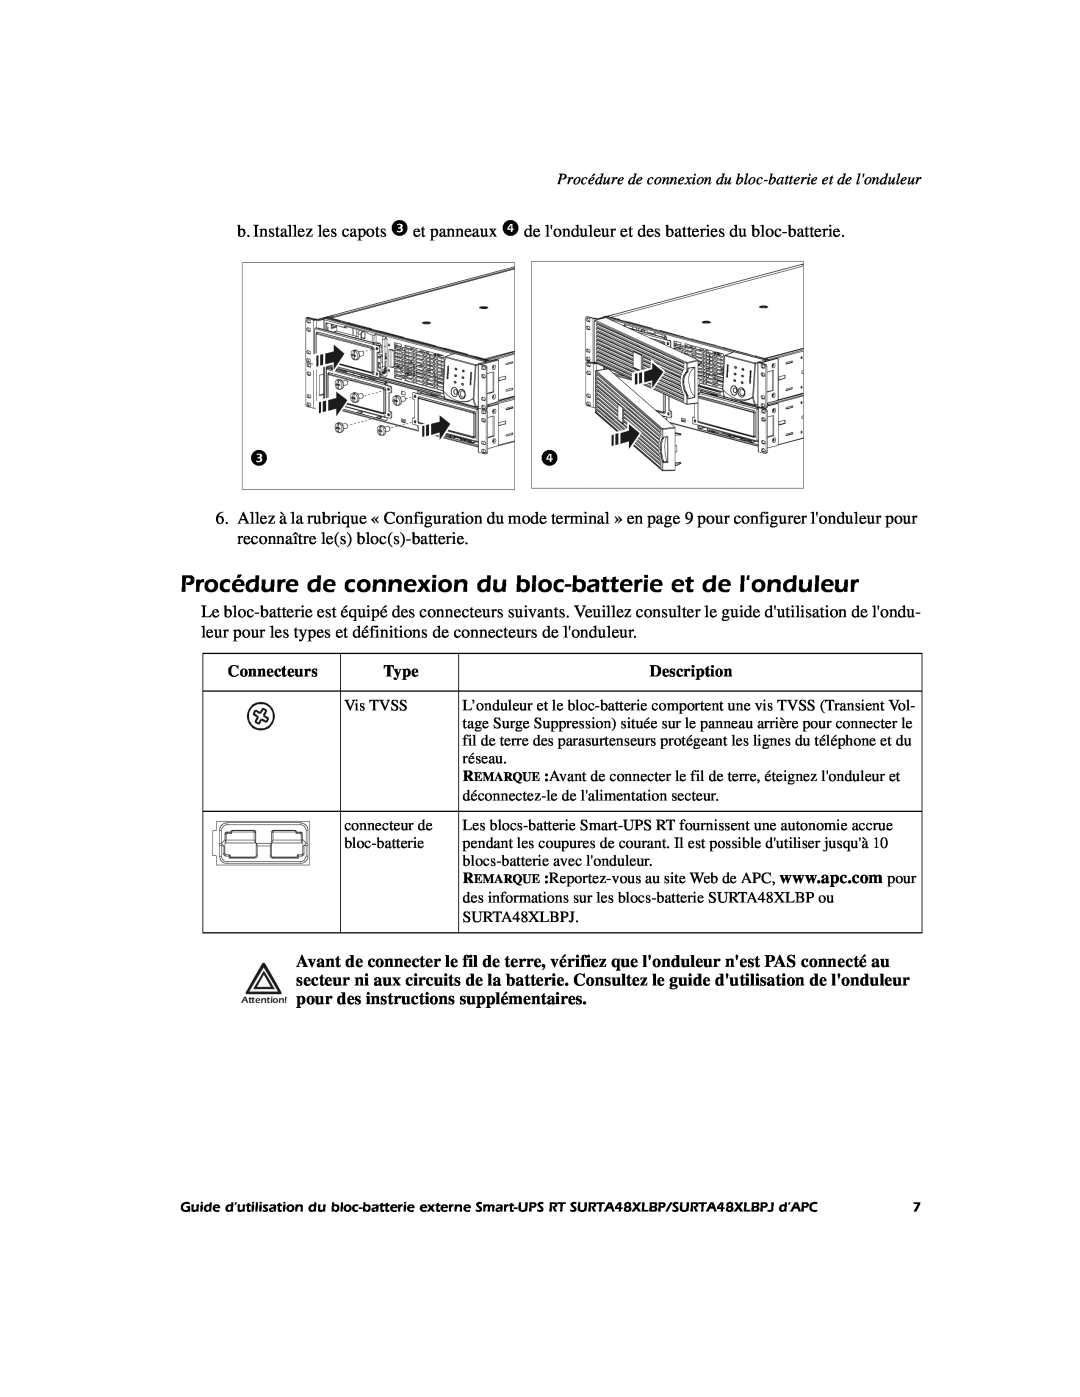 APC SURTA48XLBP manual Procédure de connexion du bloc-batterie et de londuleur, Connecteurs, Type, Description 